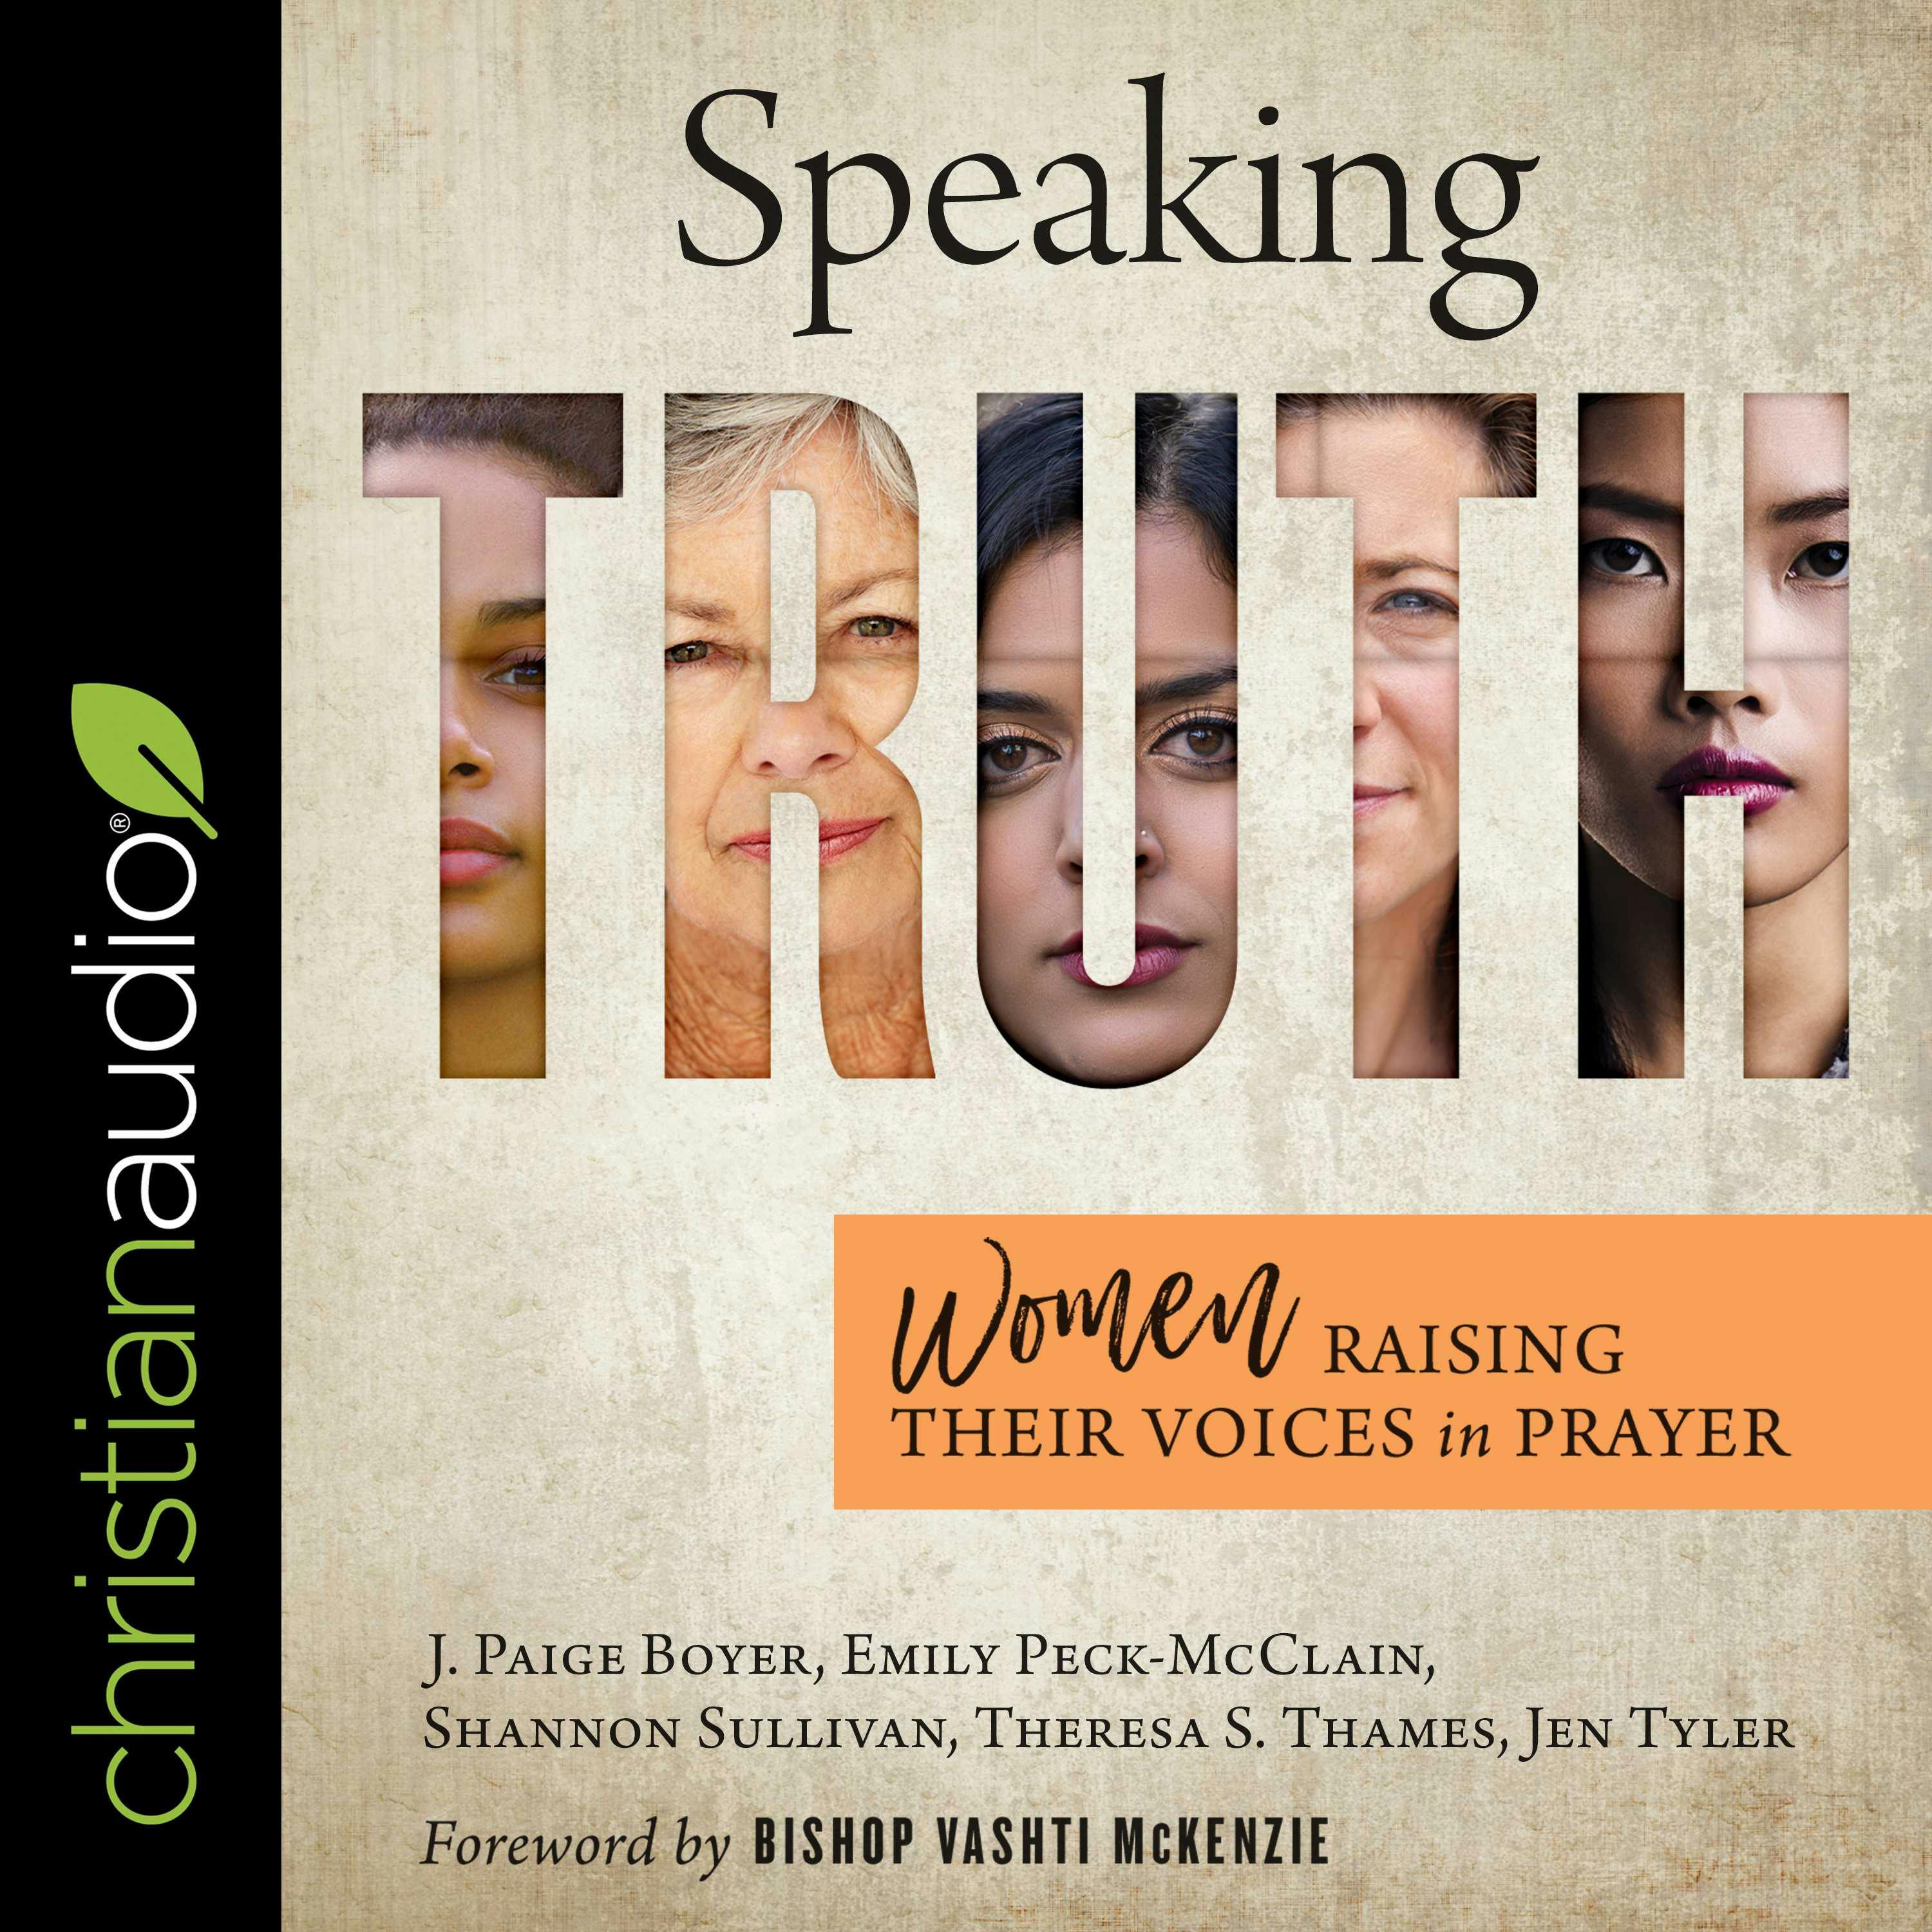 Speaking Truth: Women Raising Their Voices in Prayer - Theresa Thames, Jen Tyler, Shannon Sullivan, J. Paige Boyer, Emily Peck-McClain